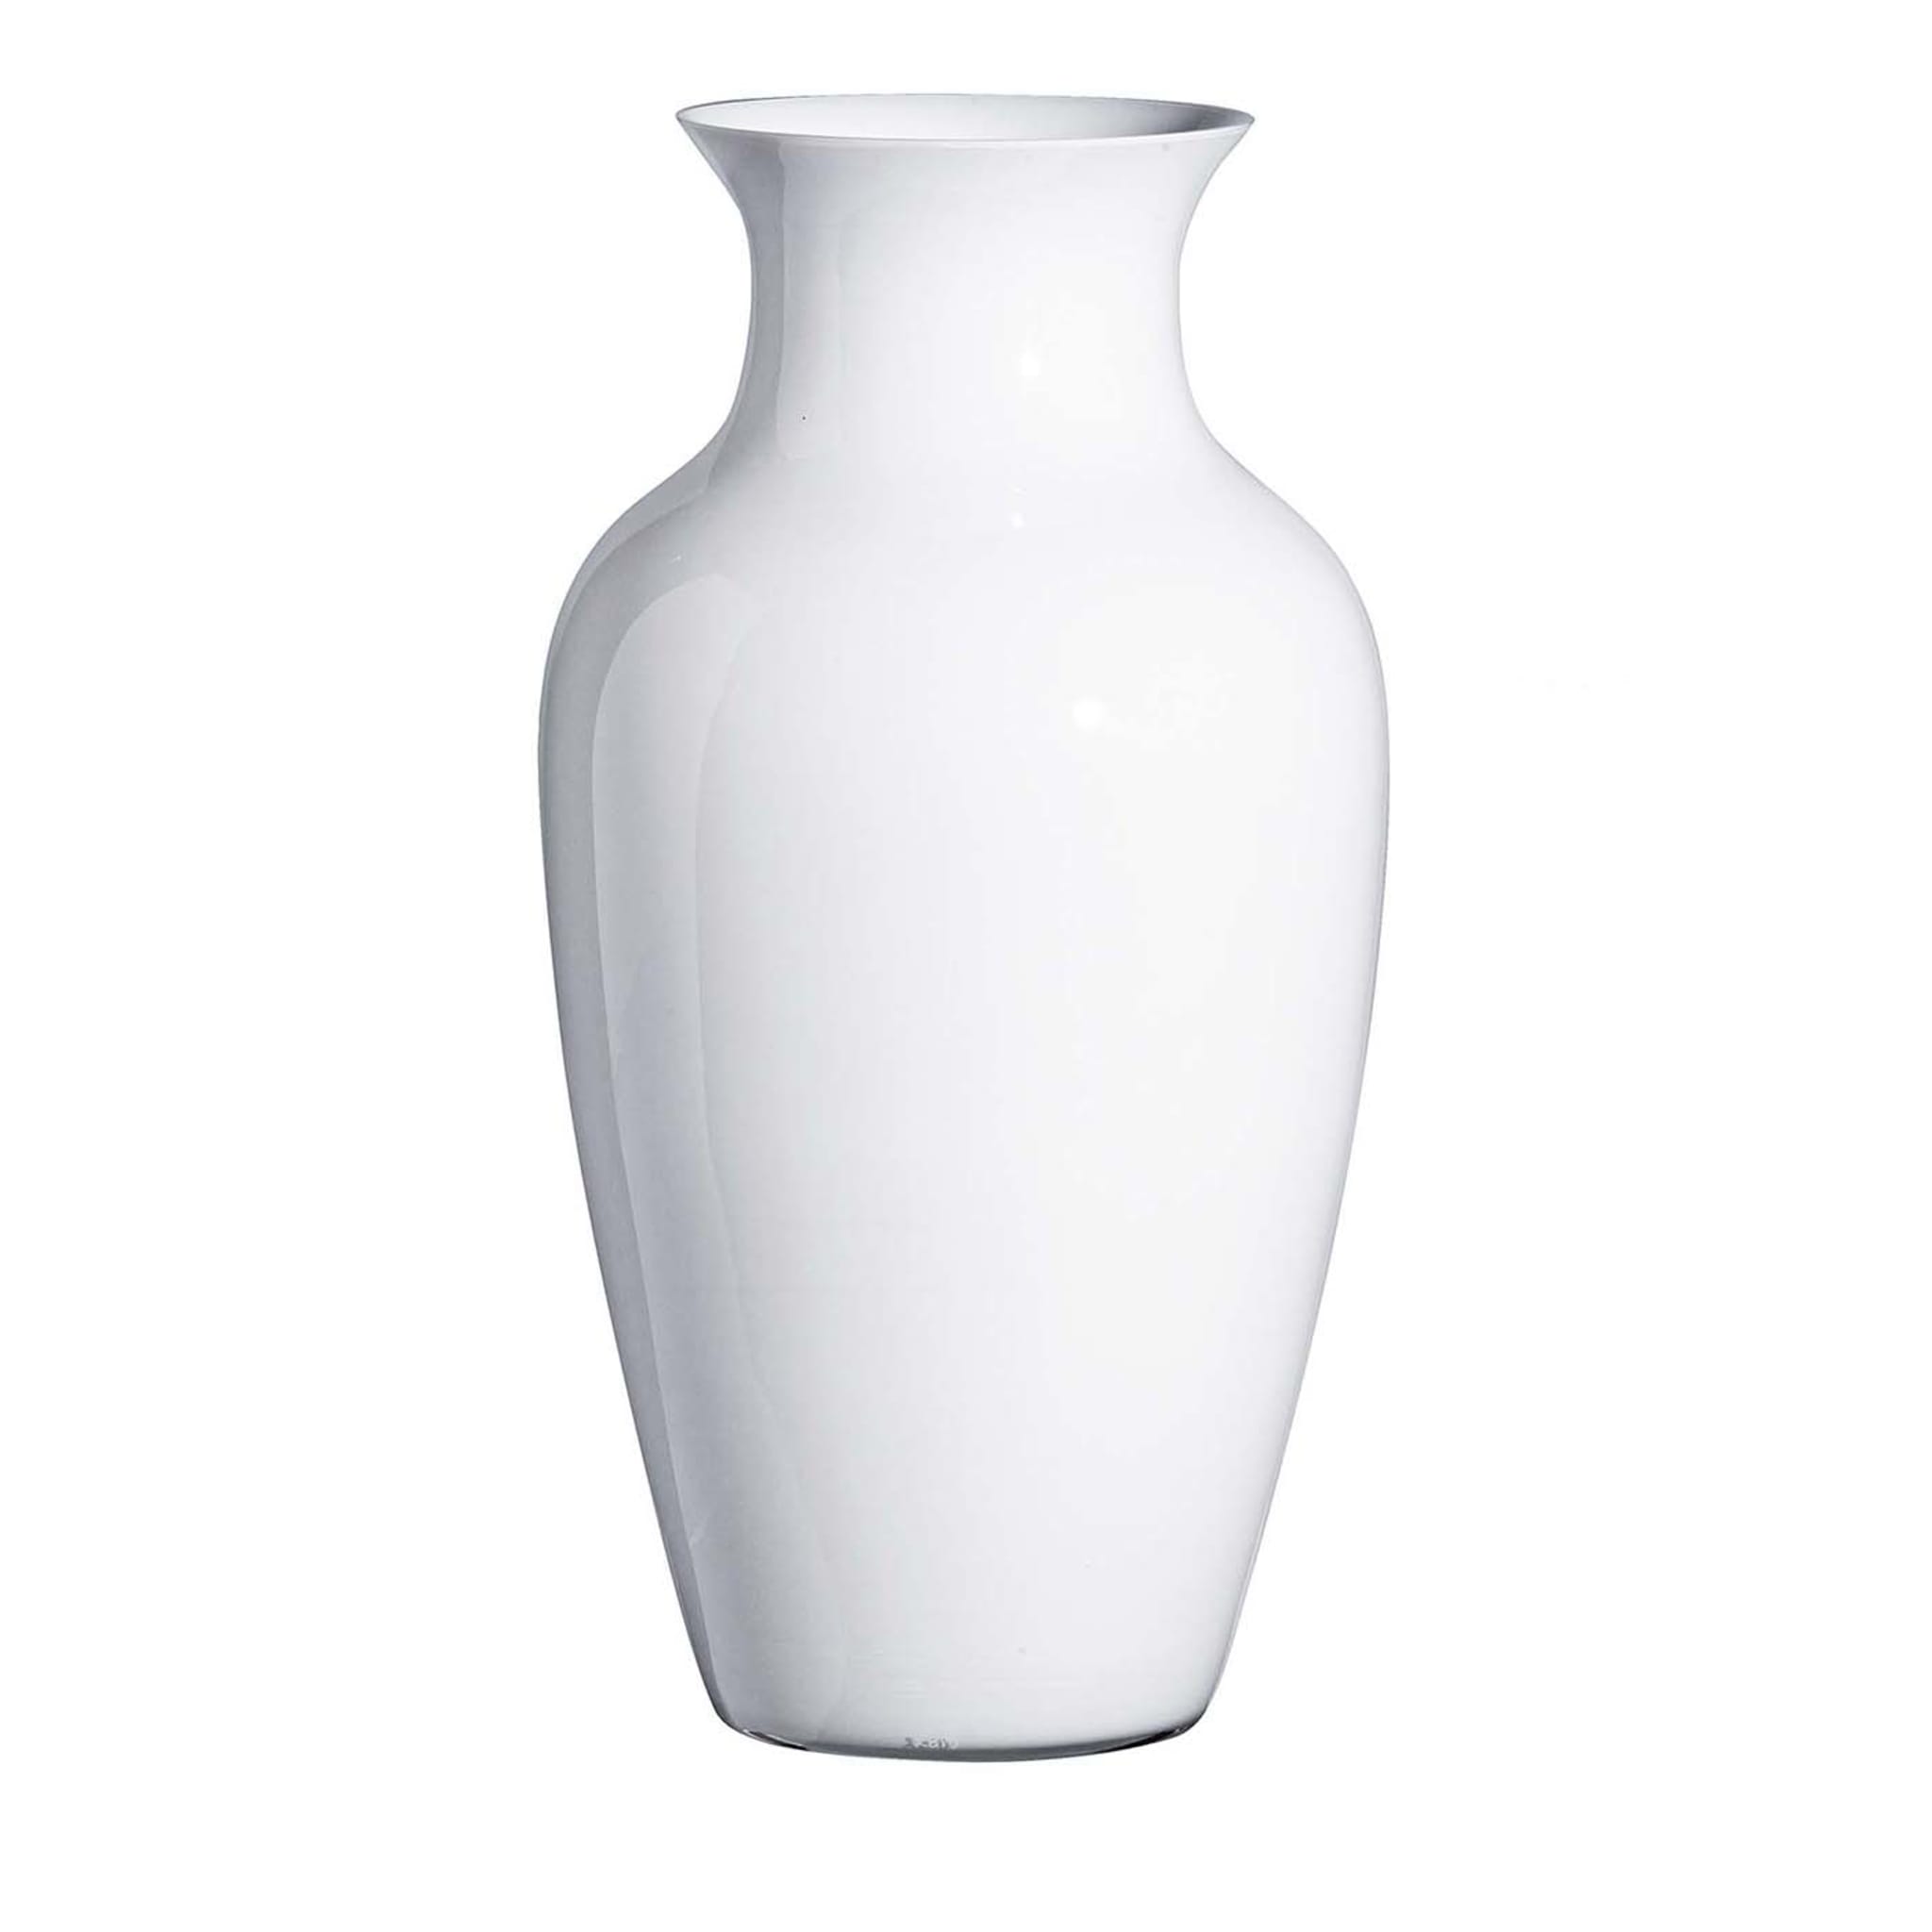 Weiße Vase I Cinesi von Carlo Moretti - Hauptansicht